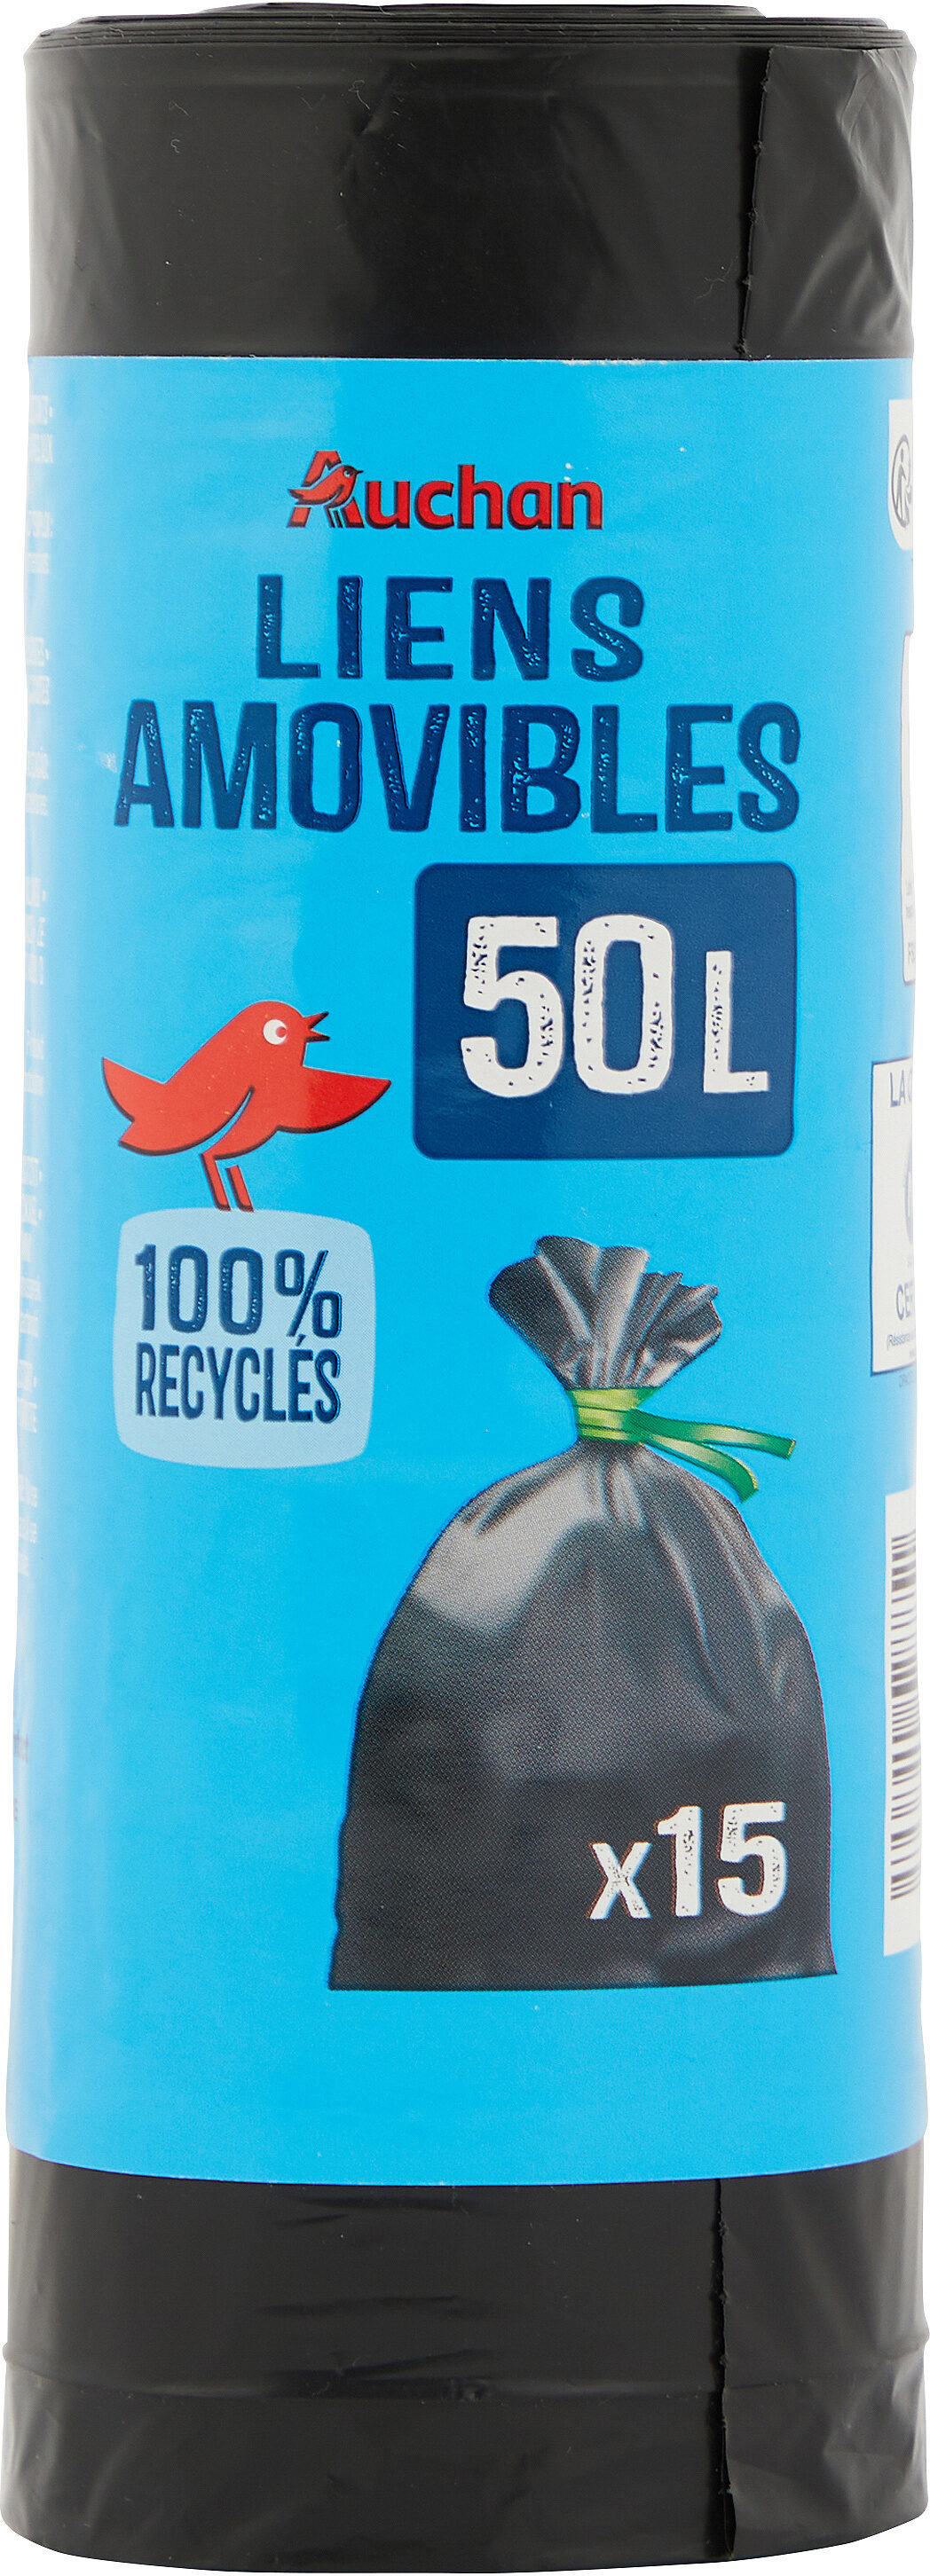 Sacs poubelle liens amovibles 50 litres - Produit - fr